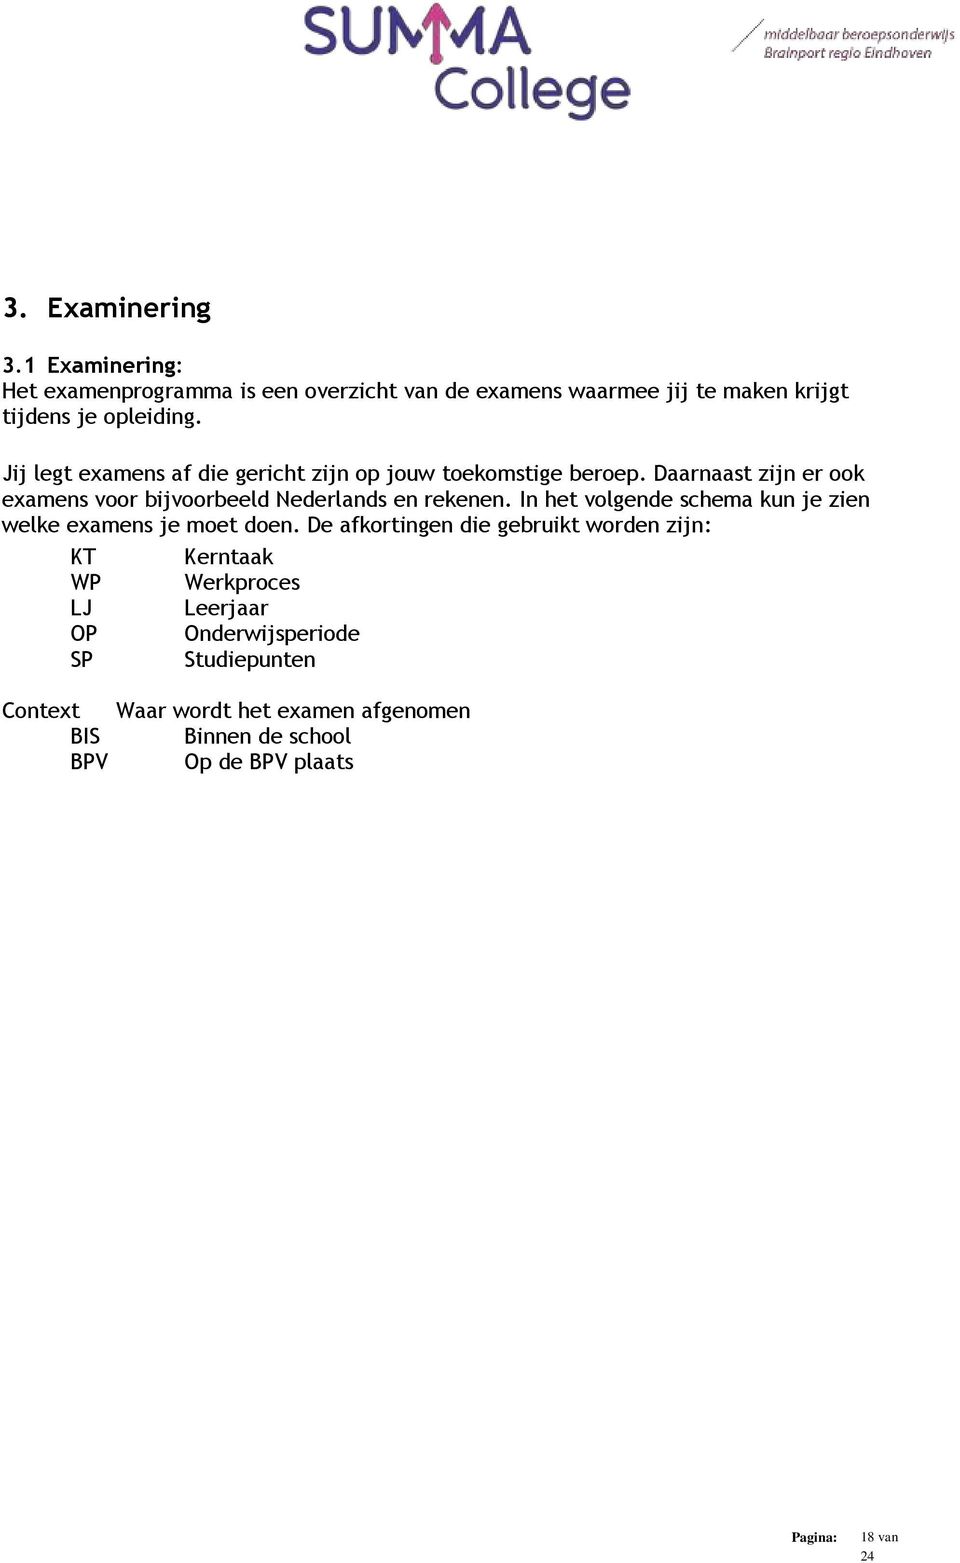 Daarnaast zijn er ook examens voor bijvoorbeeld Nederlands en rekenen. In het volgende schema kun je zien welke examens je moet doen.